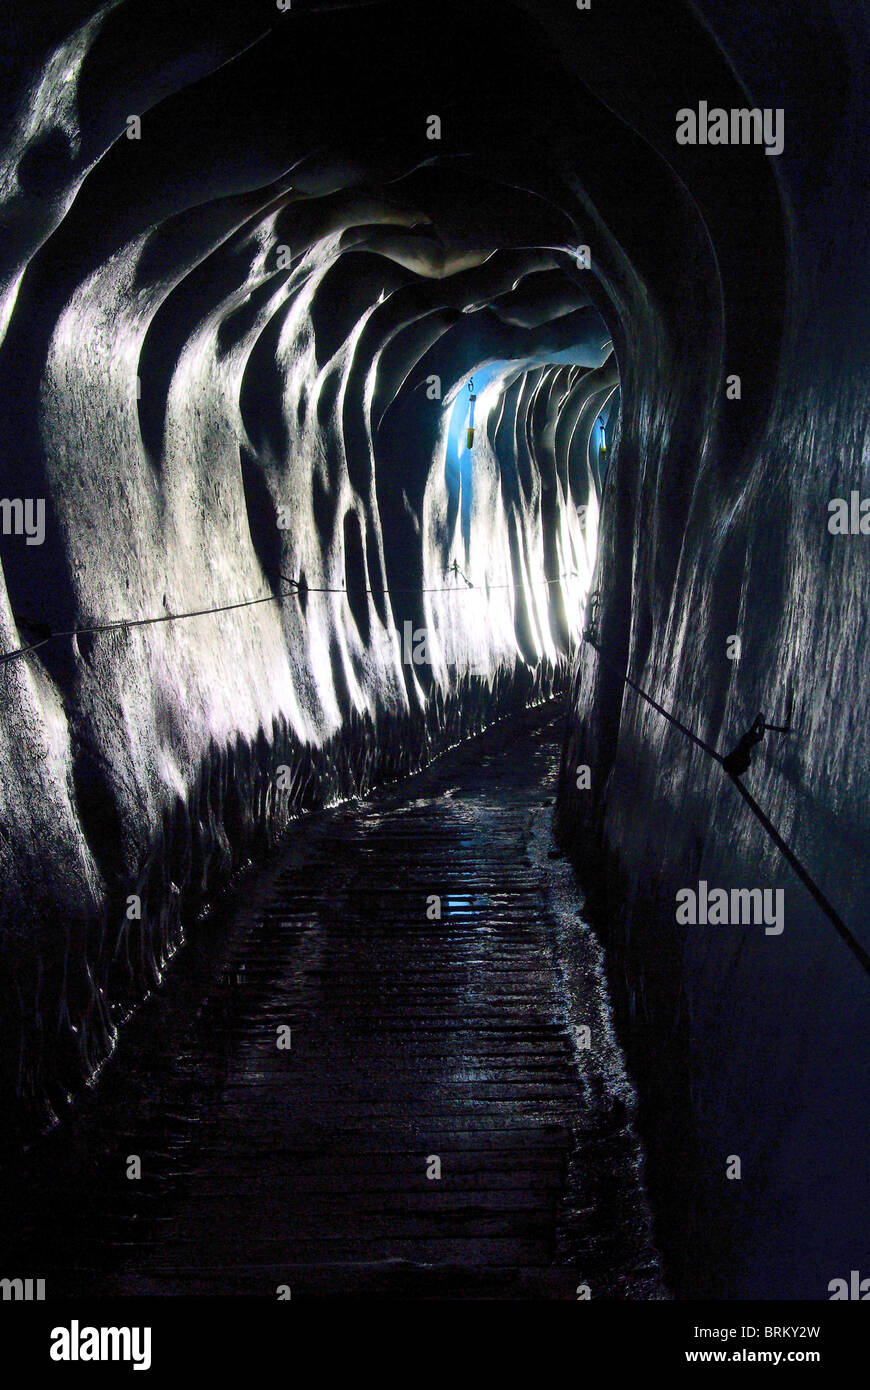 Gletschertunnel - tunnel dans le glacier 01 Banque D'Images